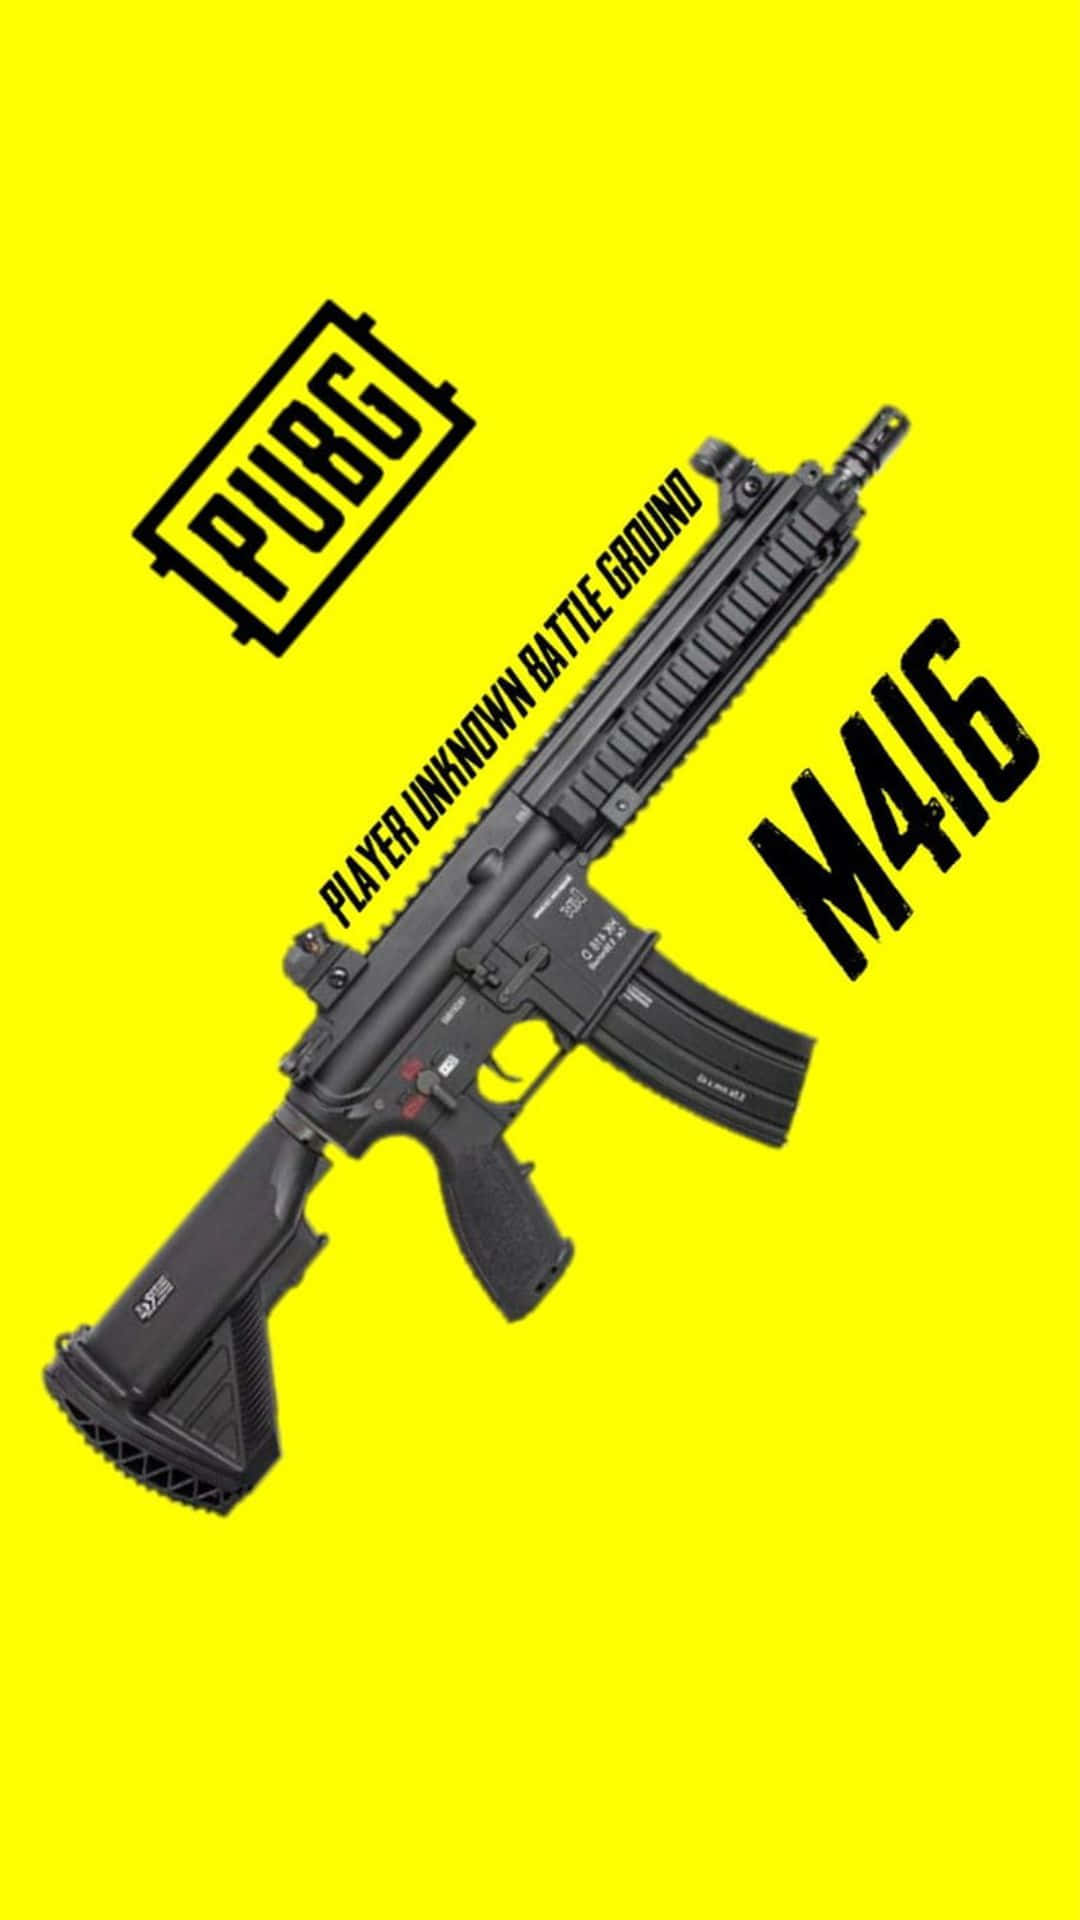 High-Definition PUBG Guns Wallpaper Wallpaper